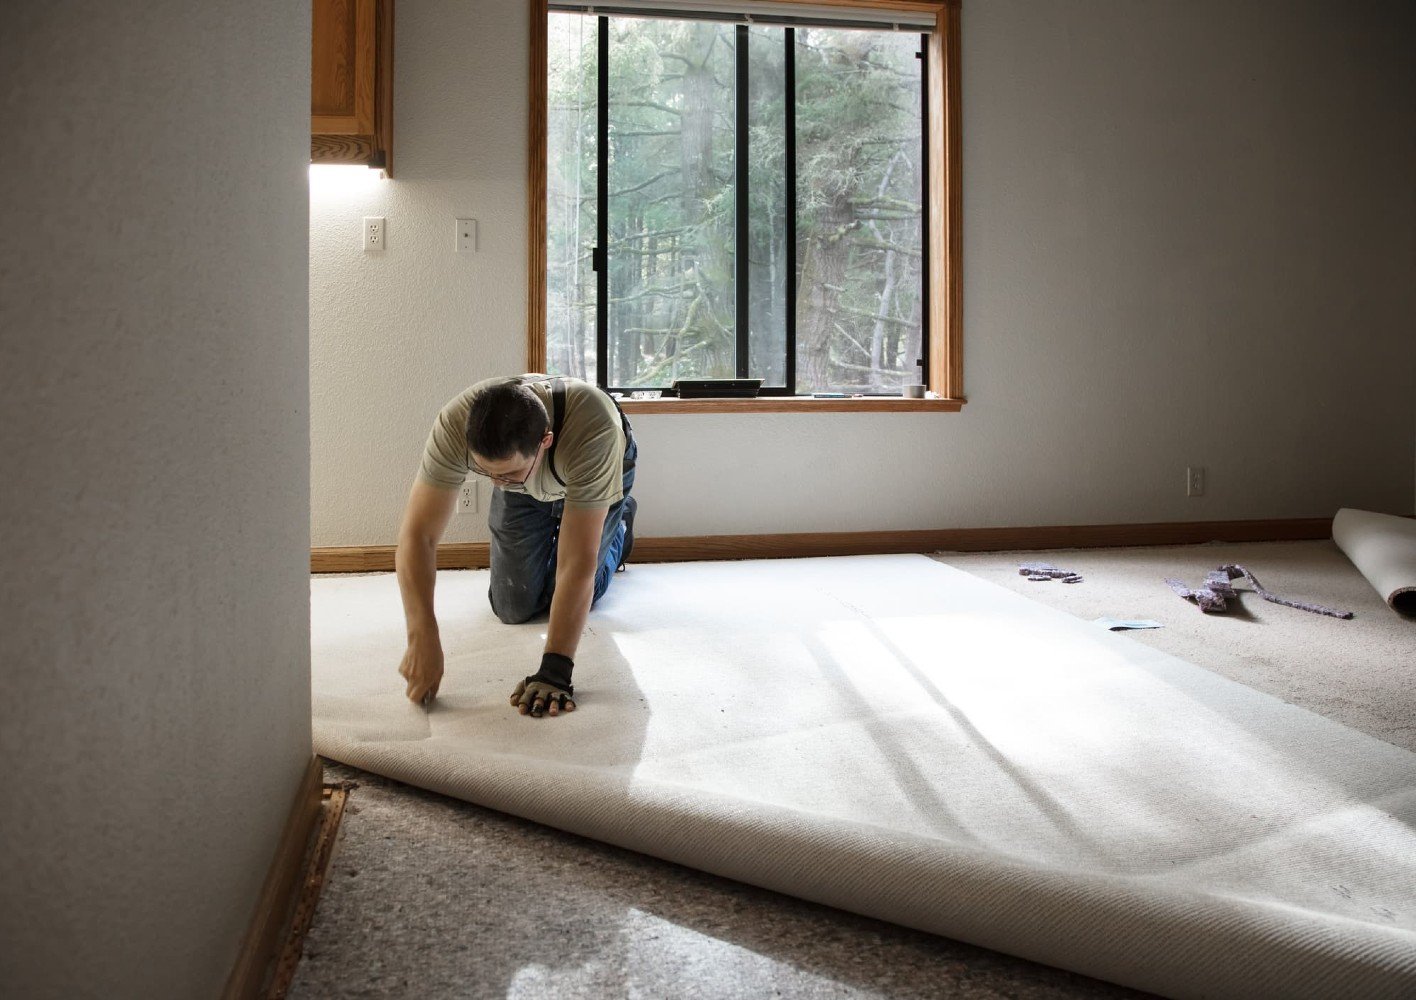 carpet install